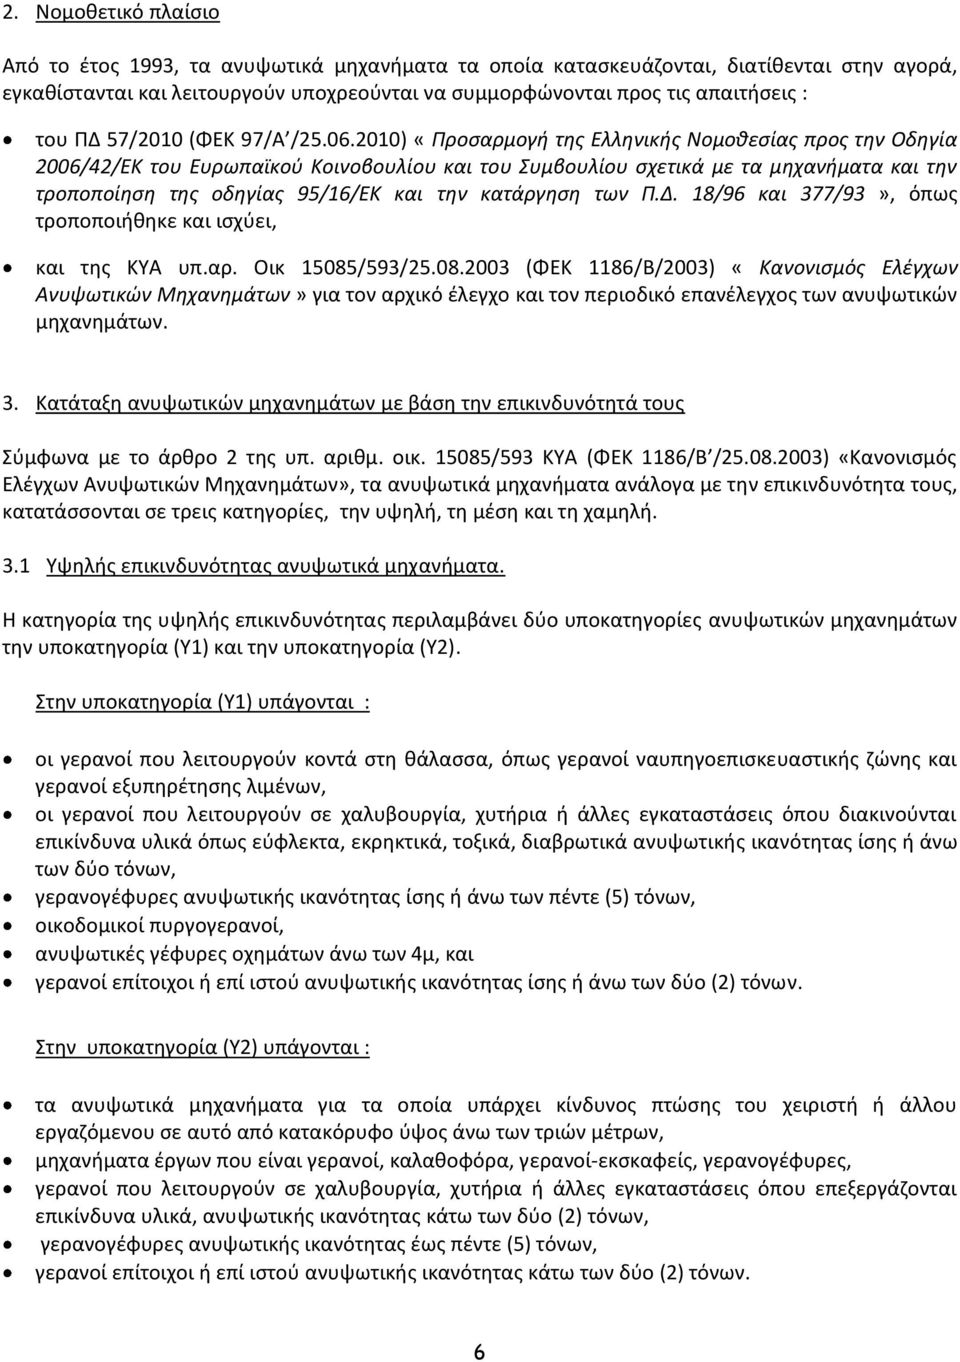 2010) «Προσαρμογή της Ελληνικής Νομοθεσίας προς την Οδηγία 2006/42/ΕΚ του Ευρωπαϊκού Κοινοβουλίου και του Συμβουλίου σχετικά με τα μηχανήματα και την τροποποίηση της οδηγίας 95/16/ΕΚ και την